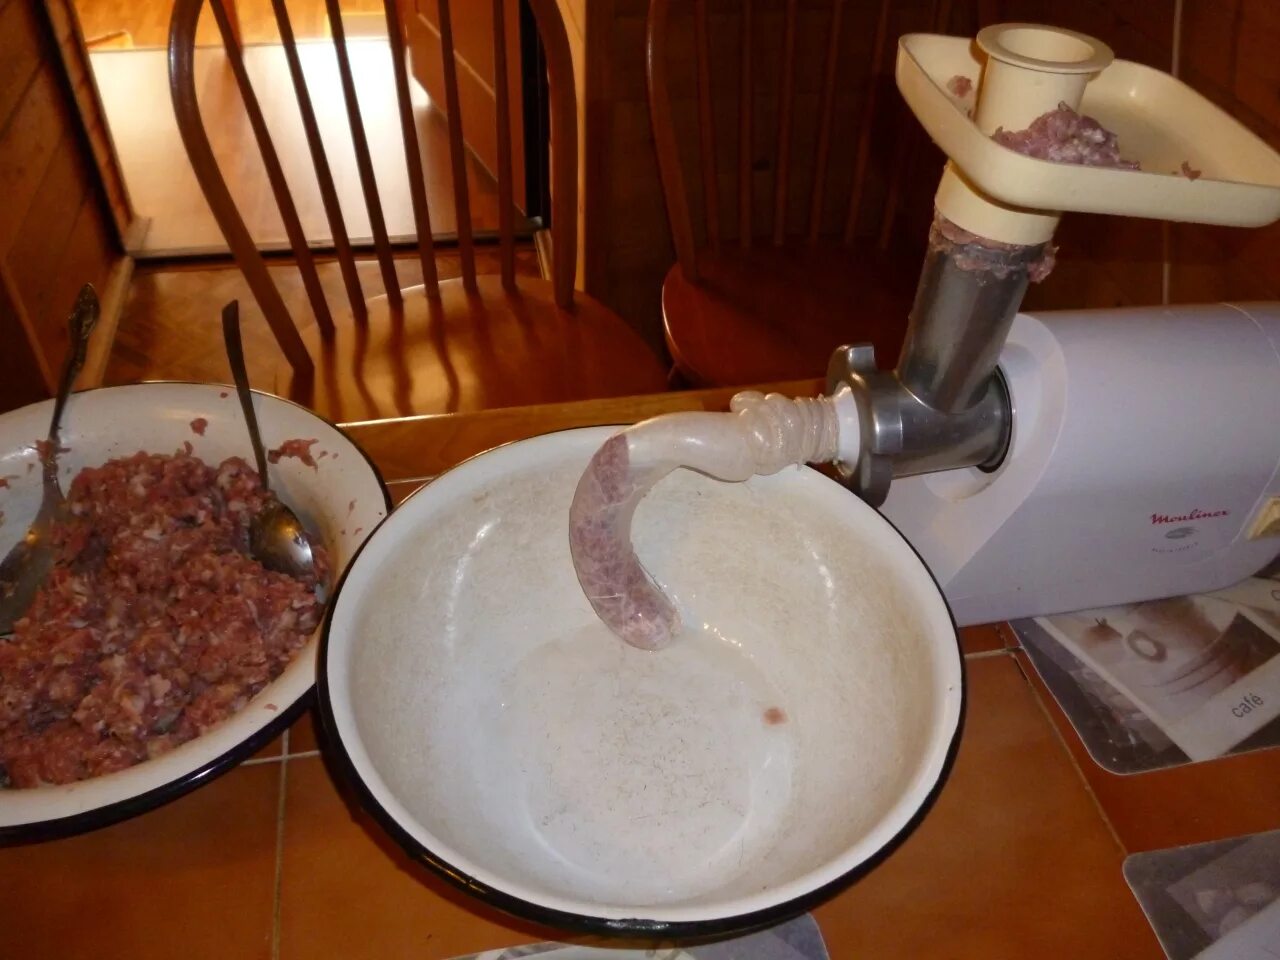 Колбаски в кишке рецепт на мясорубке